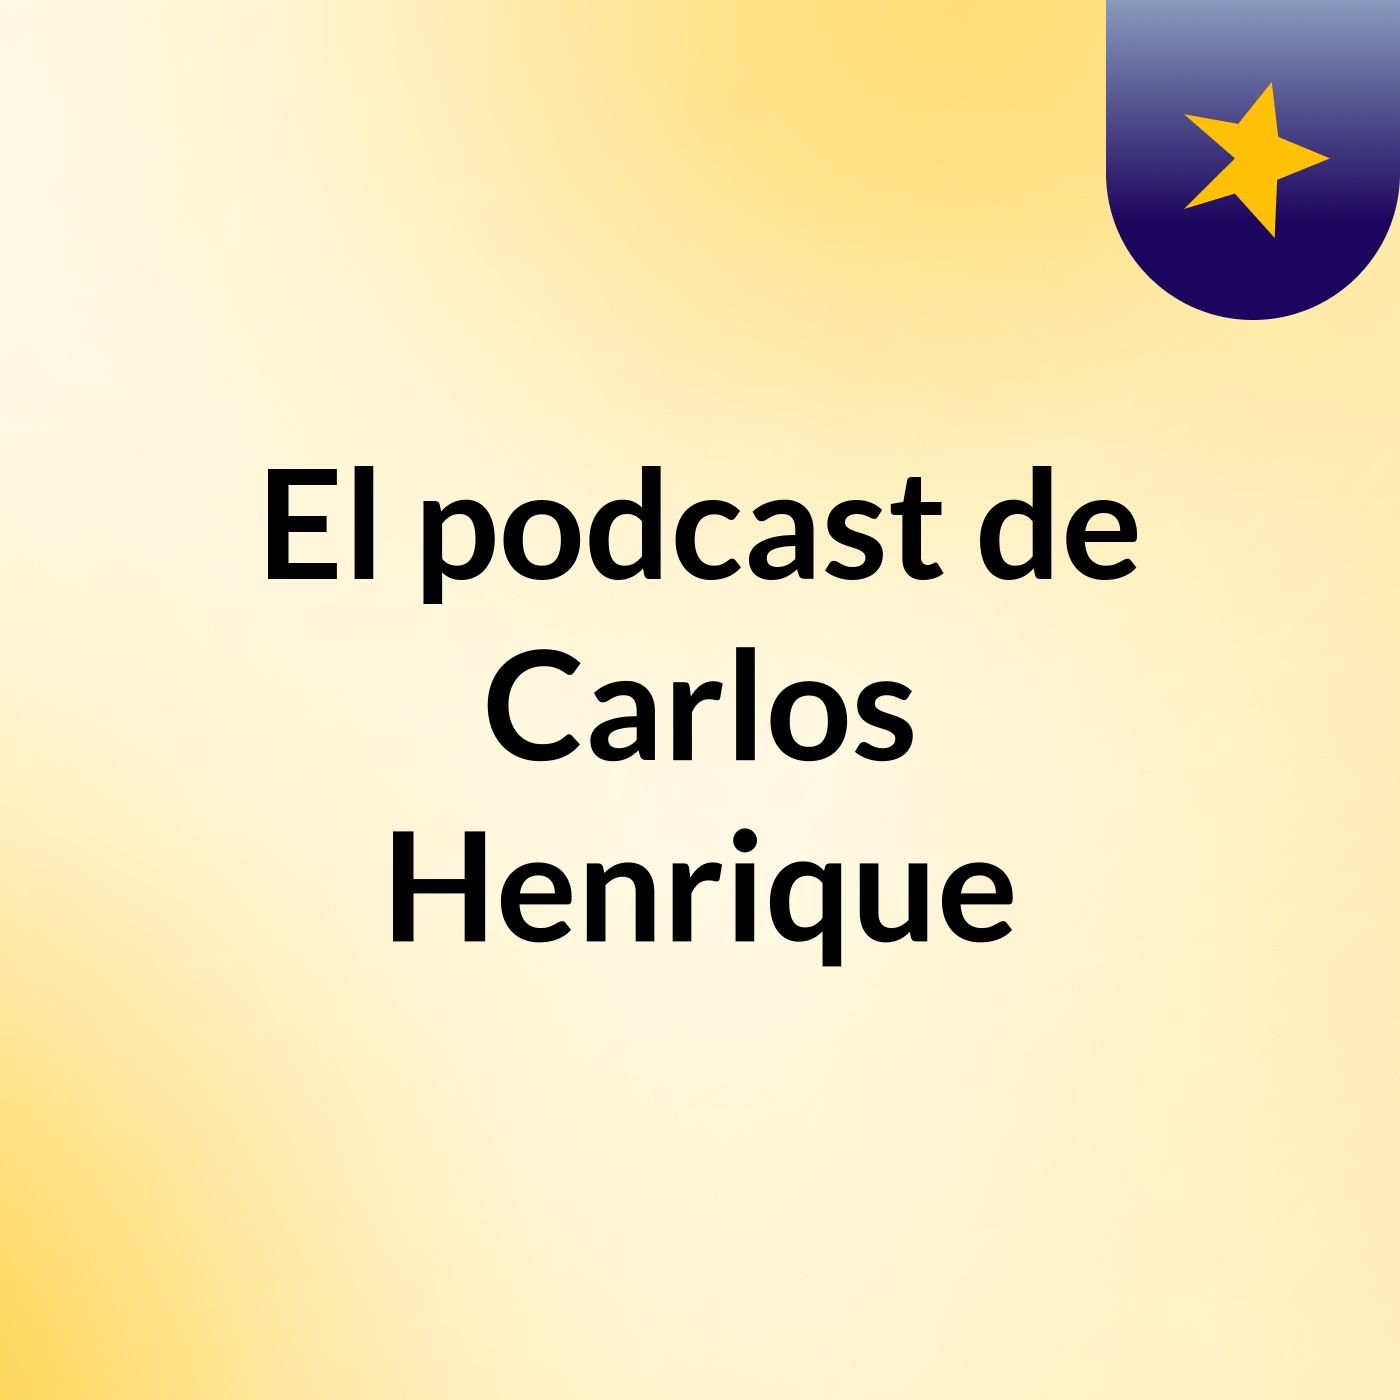 El podcast de Carlos Henrique